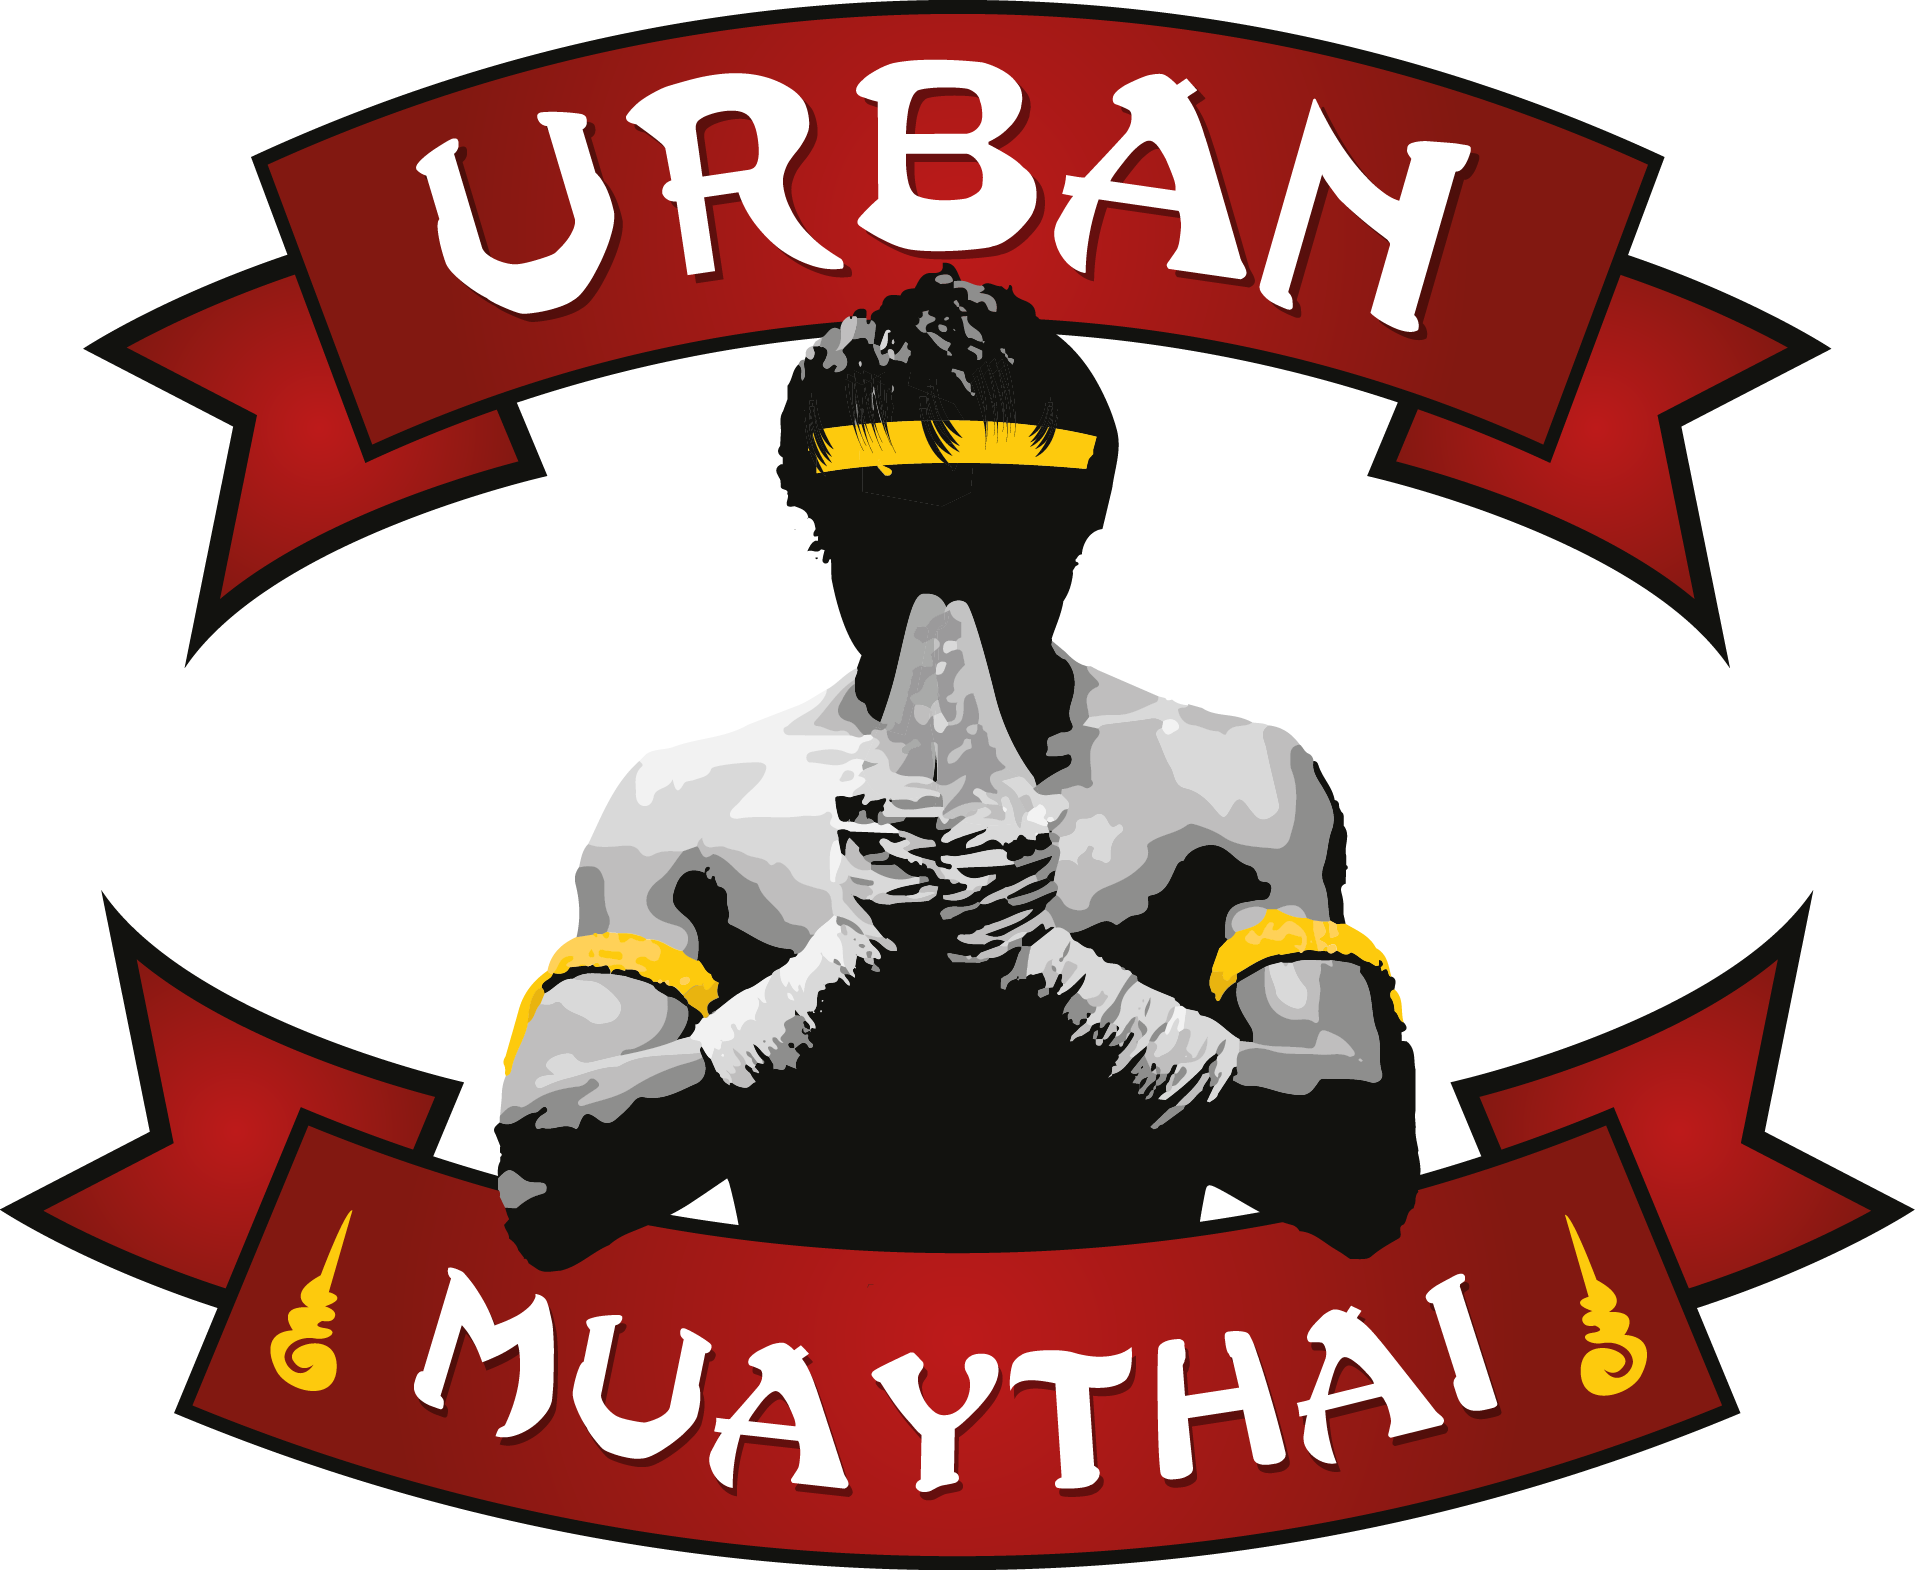 Urban Muaythai